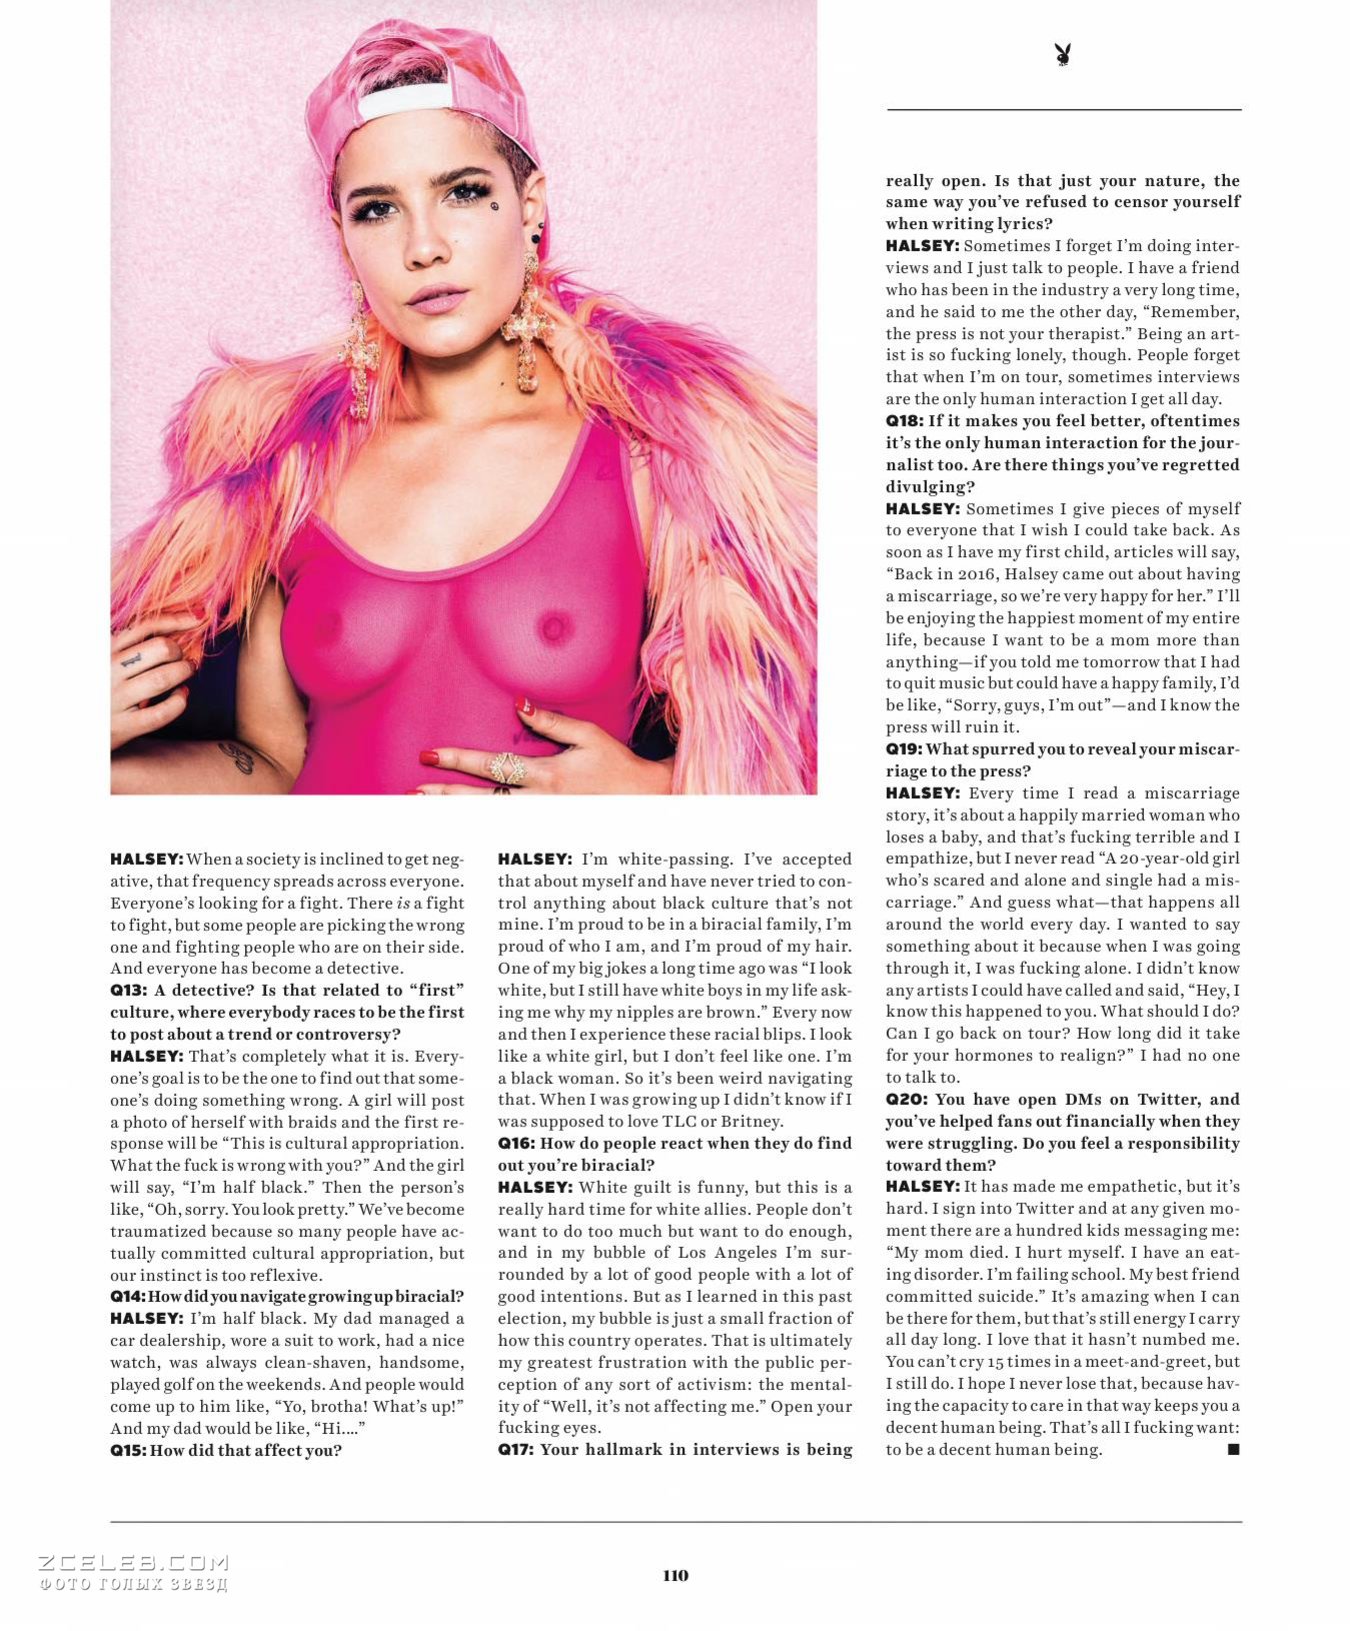 Голая грудь Холзи в прозрачном наряде для журнала Playboy, 2017.